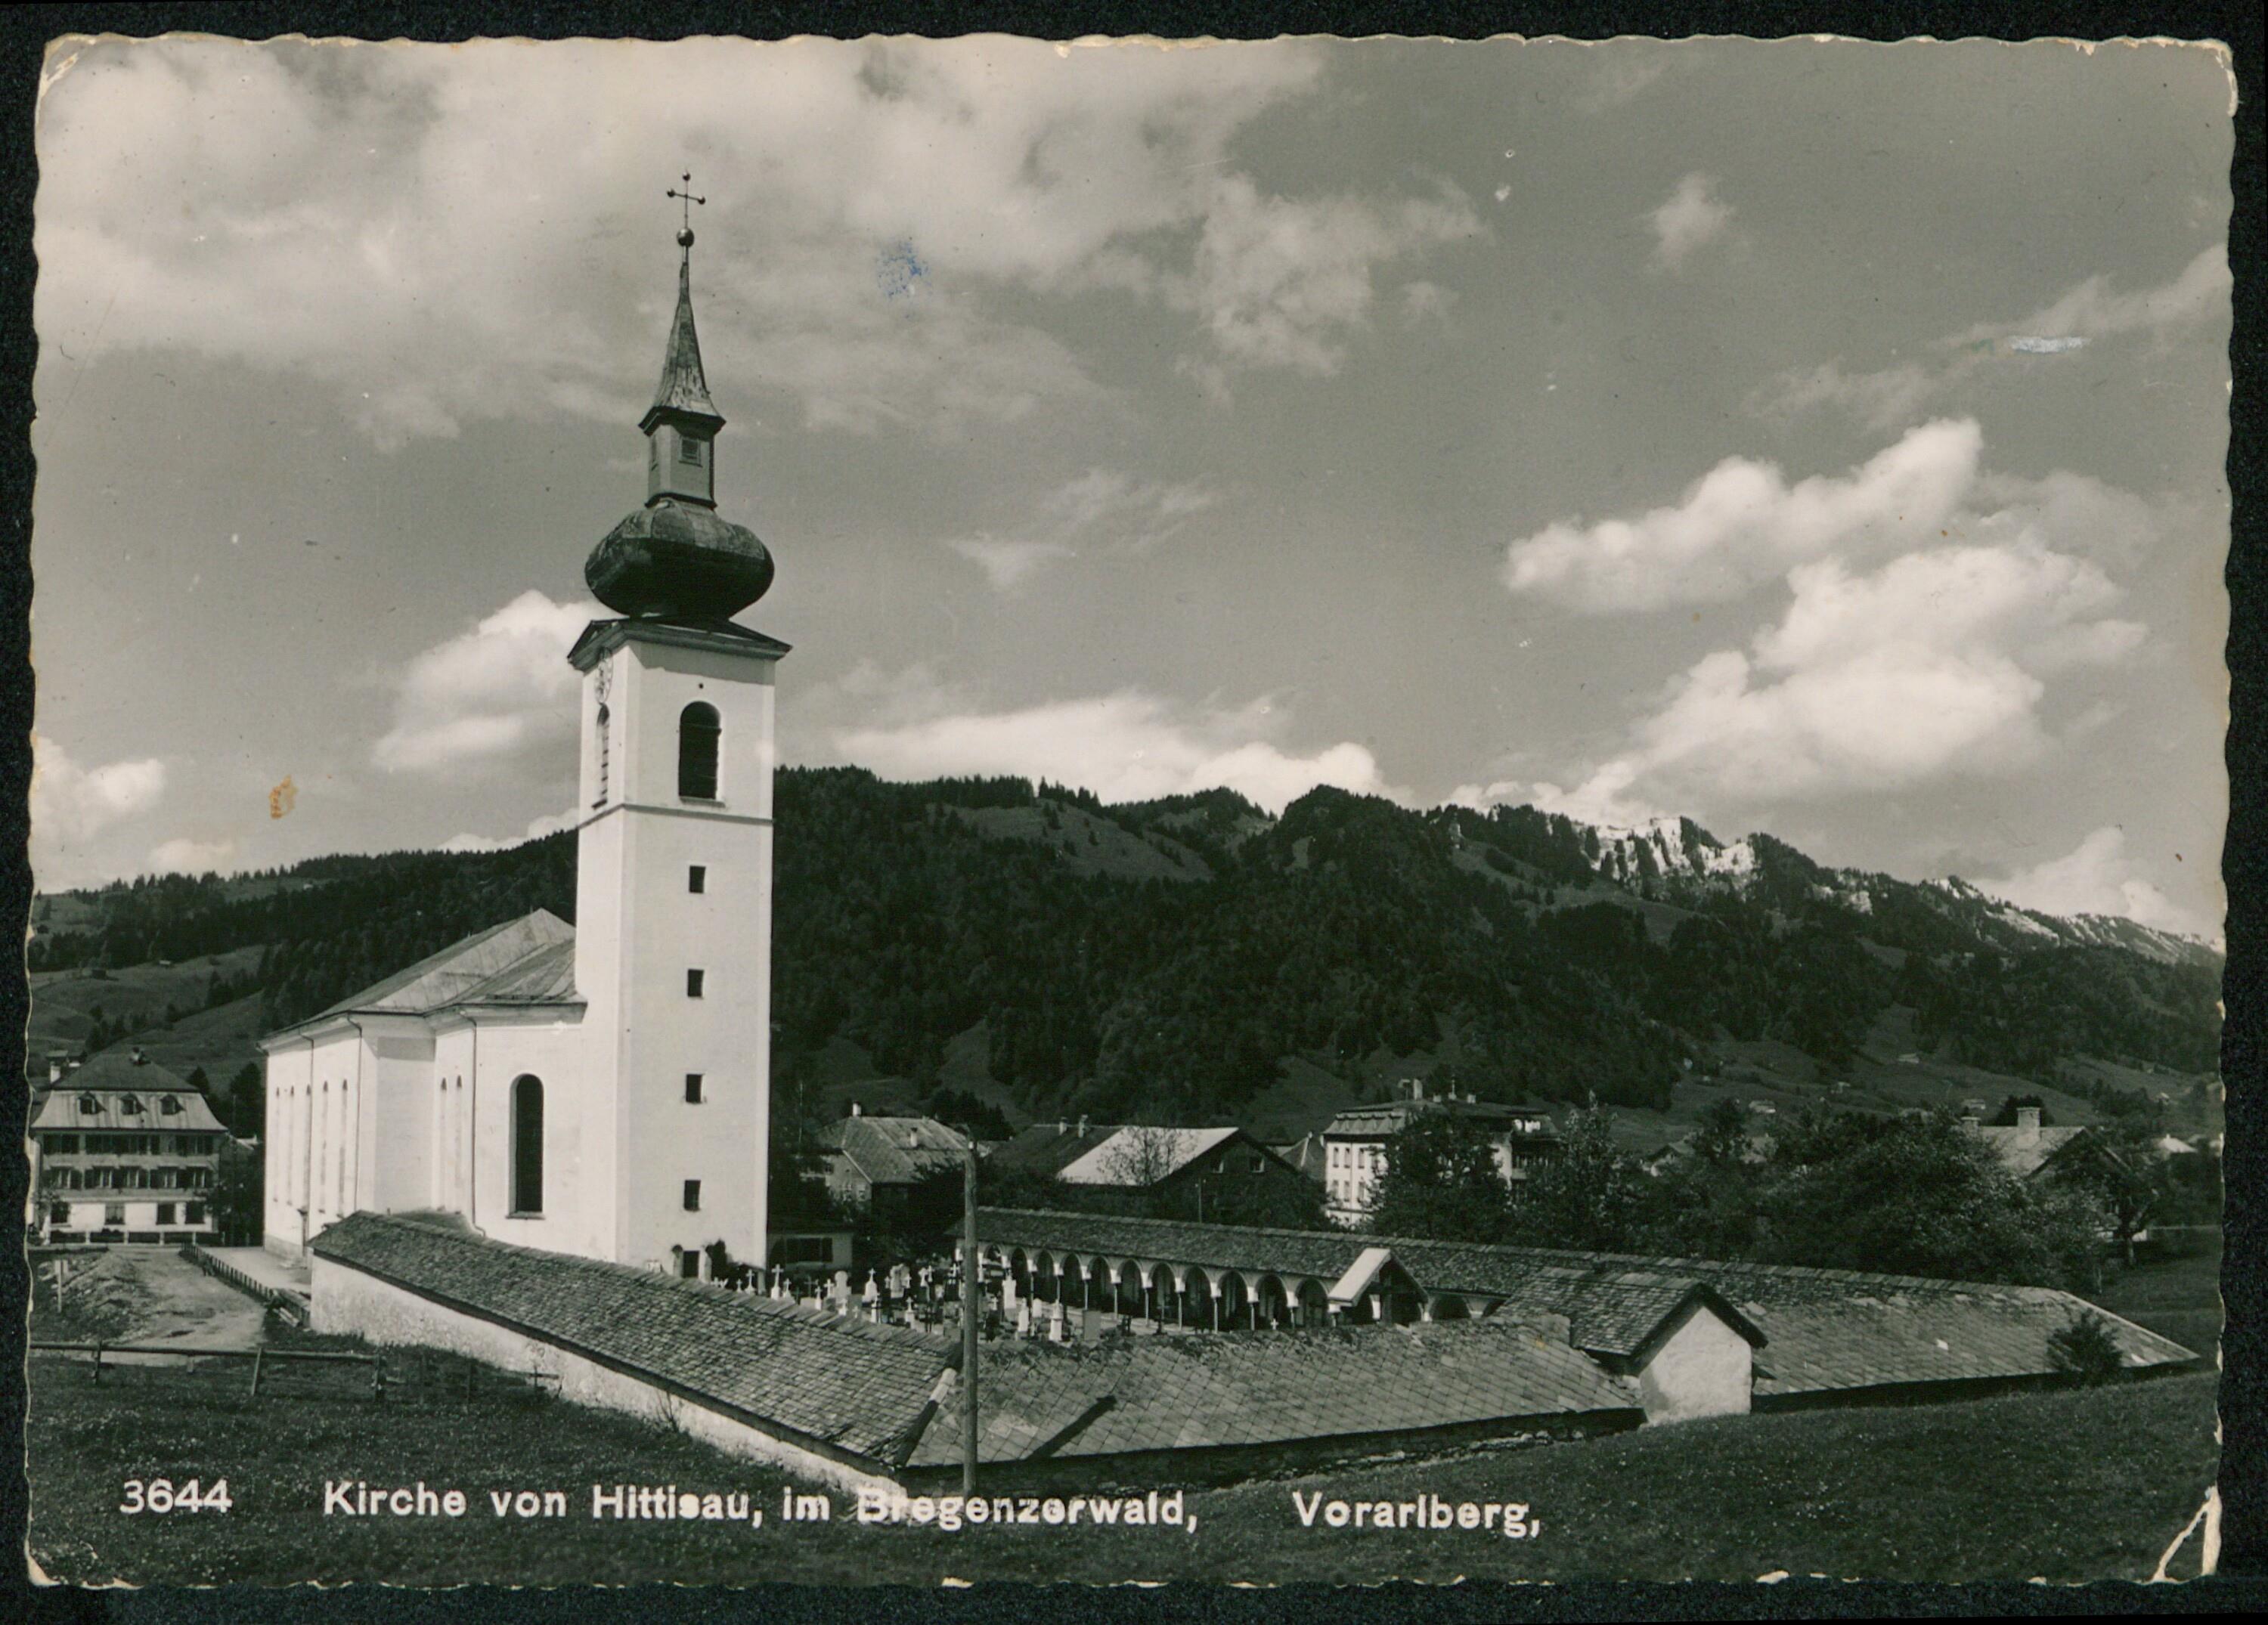 Kirche von Hittisau, im Bregenzerwald, Vorarlberg></div>


    <hr>
    <div class=